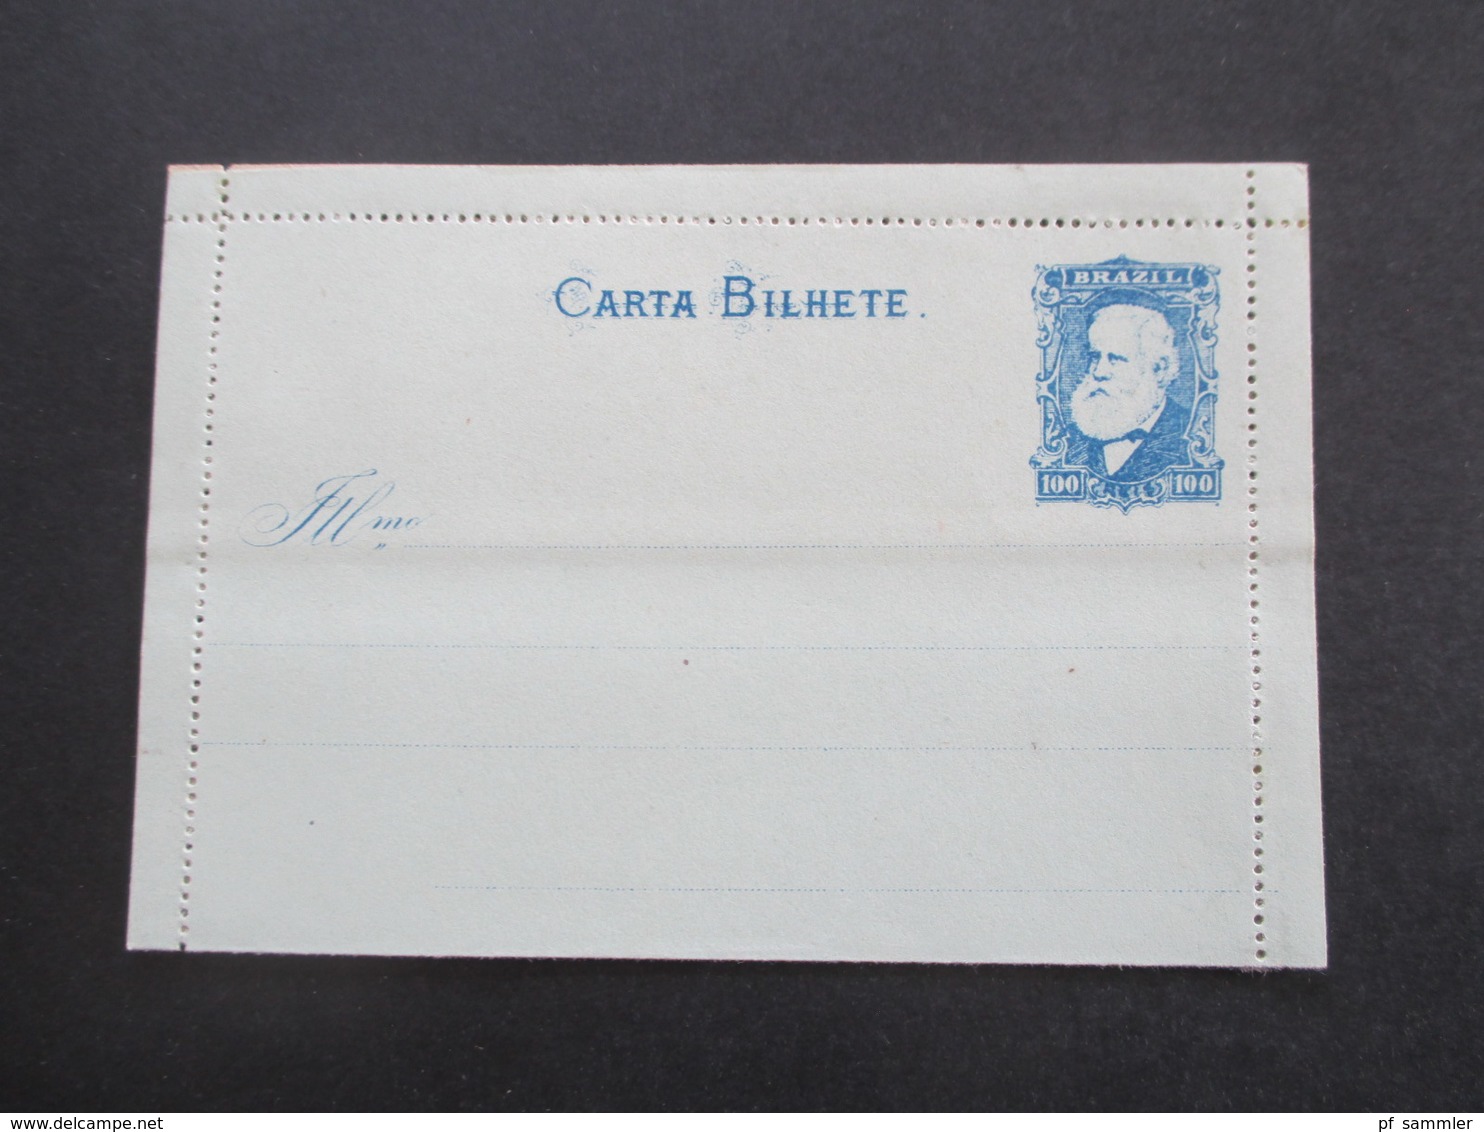 Brasilien um 1880 Ganzsache 4x Carta Bilhete und einen Ganzsachen Umschlag. Ungebraucht / 1x mit Text innen!